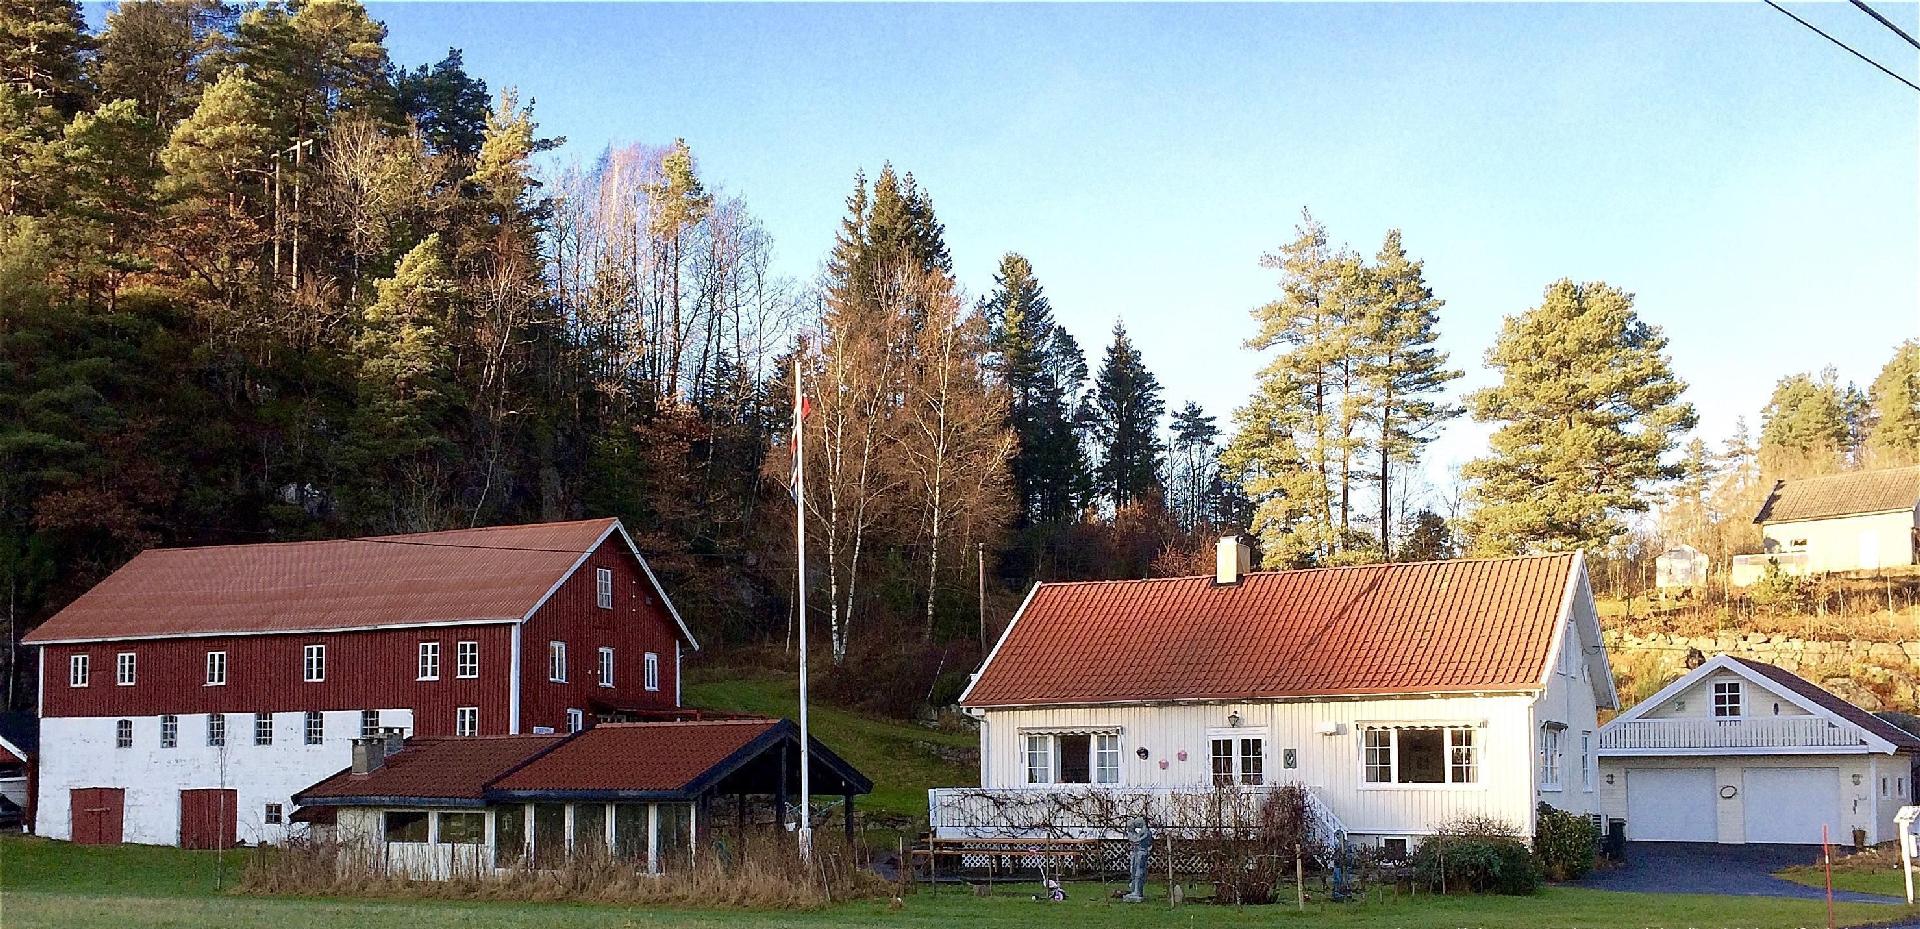 Ferienhaus in Lindesnes mit Grill, Terrasse und Ga Ferienhaus in Norwegen